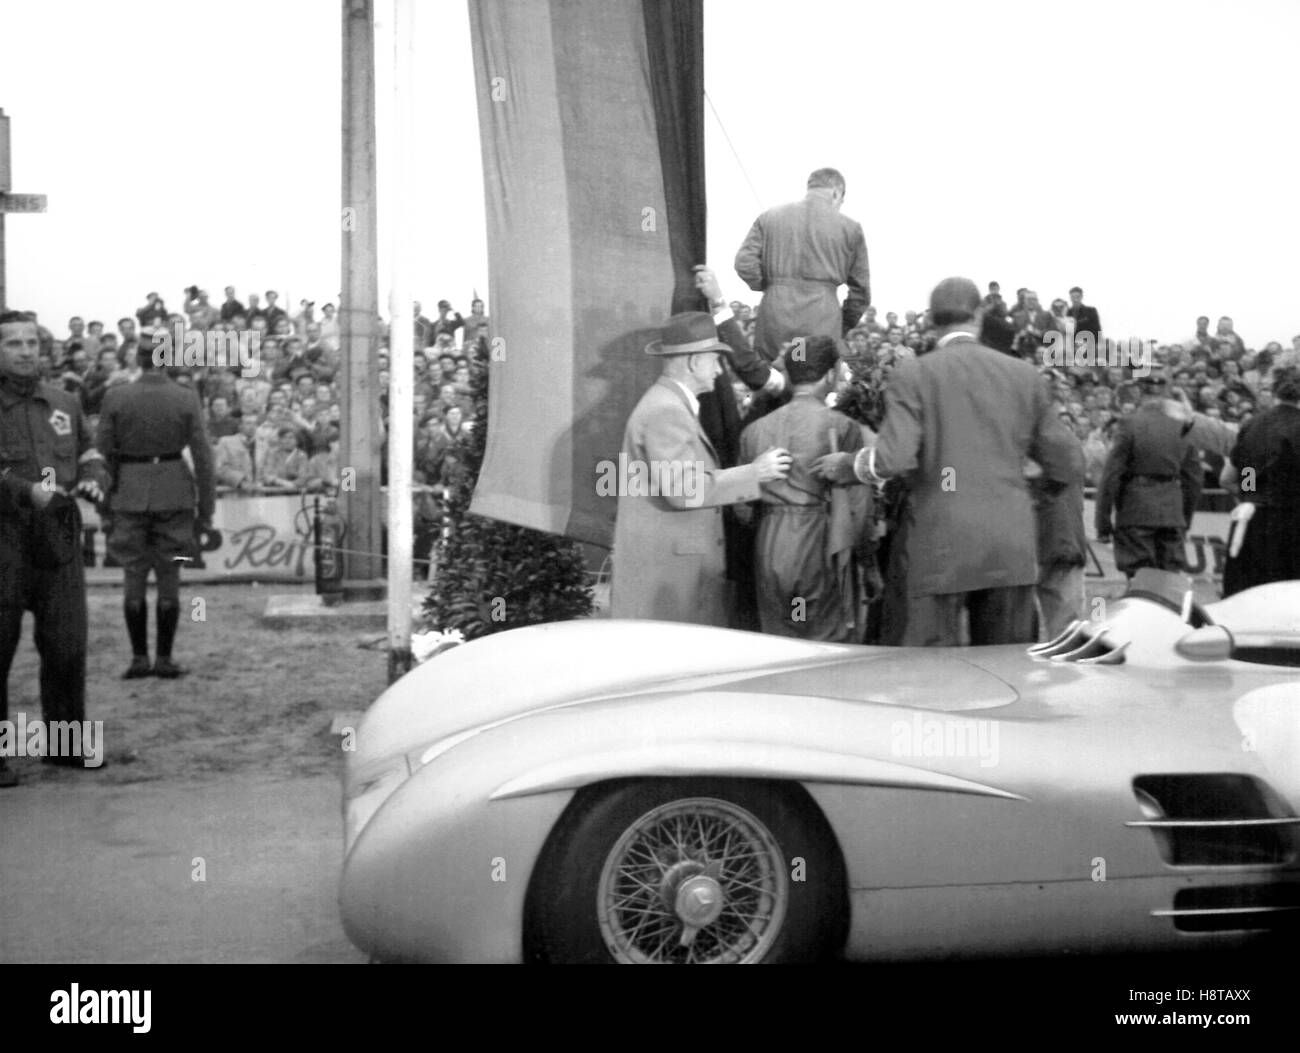 1954 BERLIN GP HERRMANN'S MERCEDES STROMLINIENWAGEN PODIUM Stock Photo